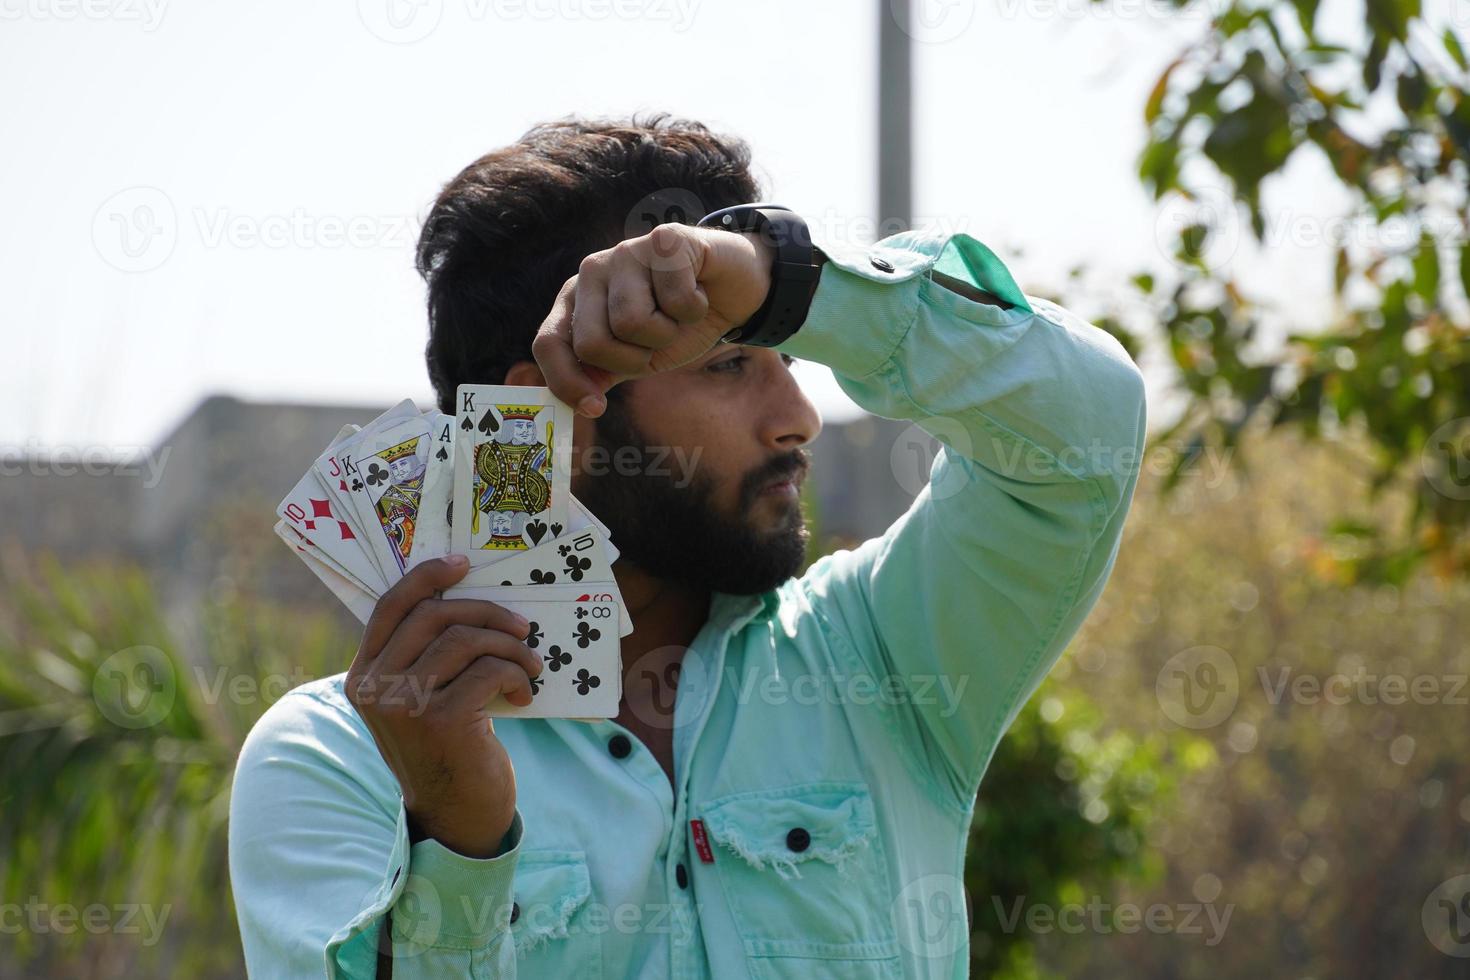 speelkaarten in de hand met een man en shiowing king card - pokerconcept foto